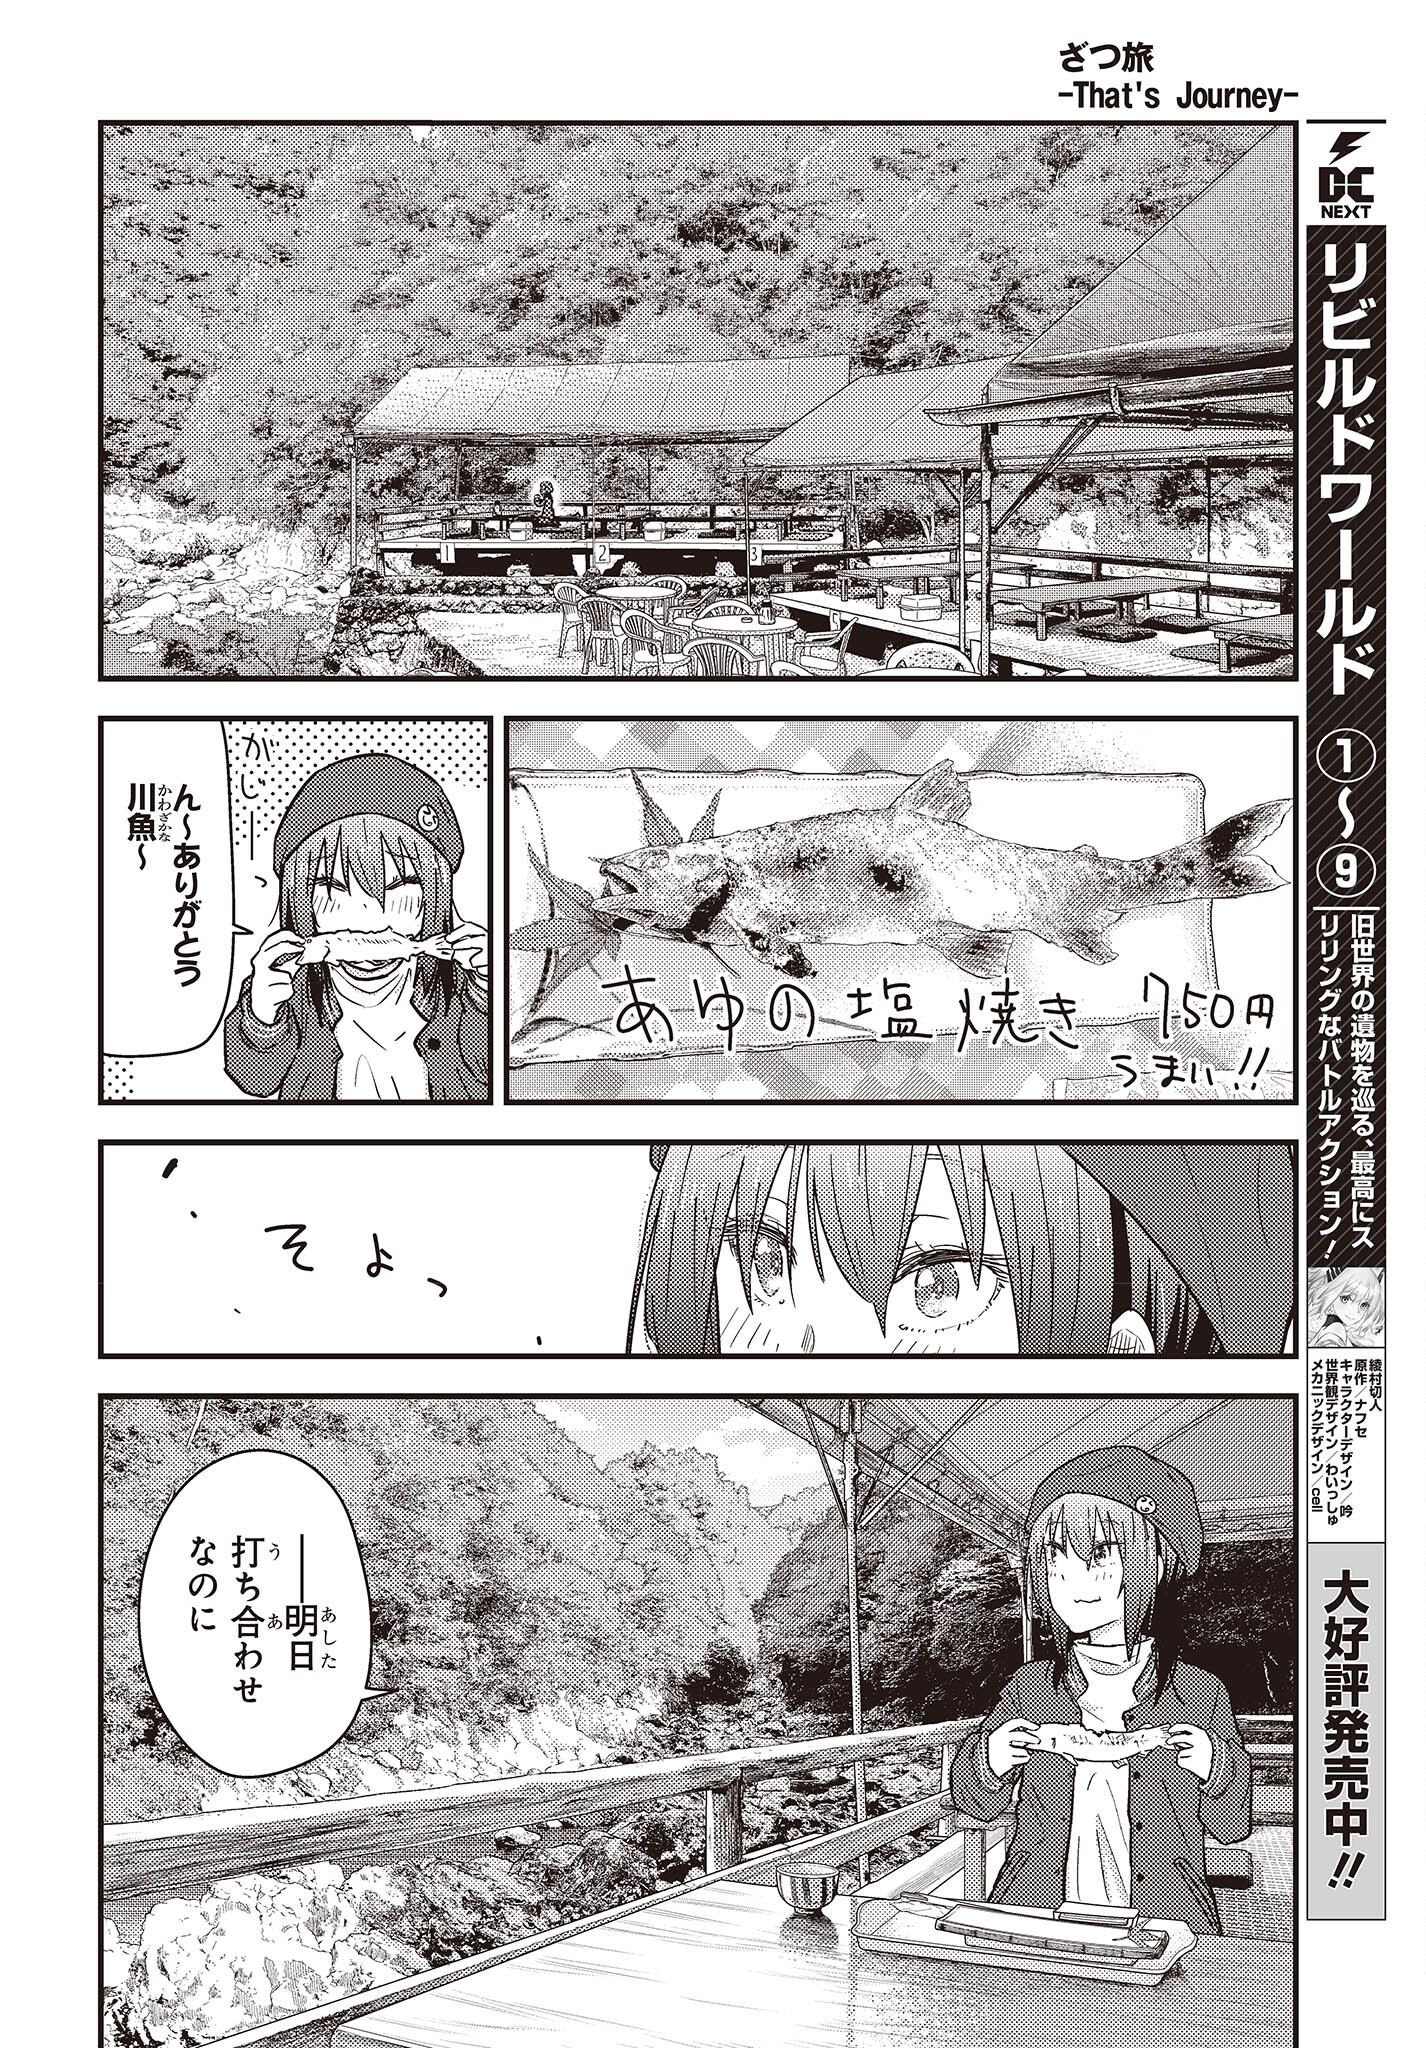 ざつ旅-That's Journey- 第29話 - Page 20